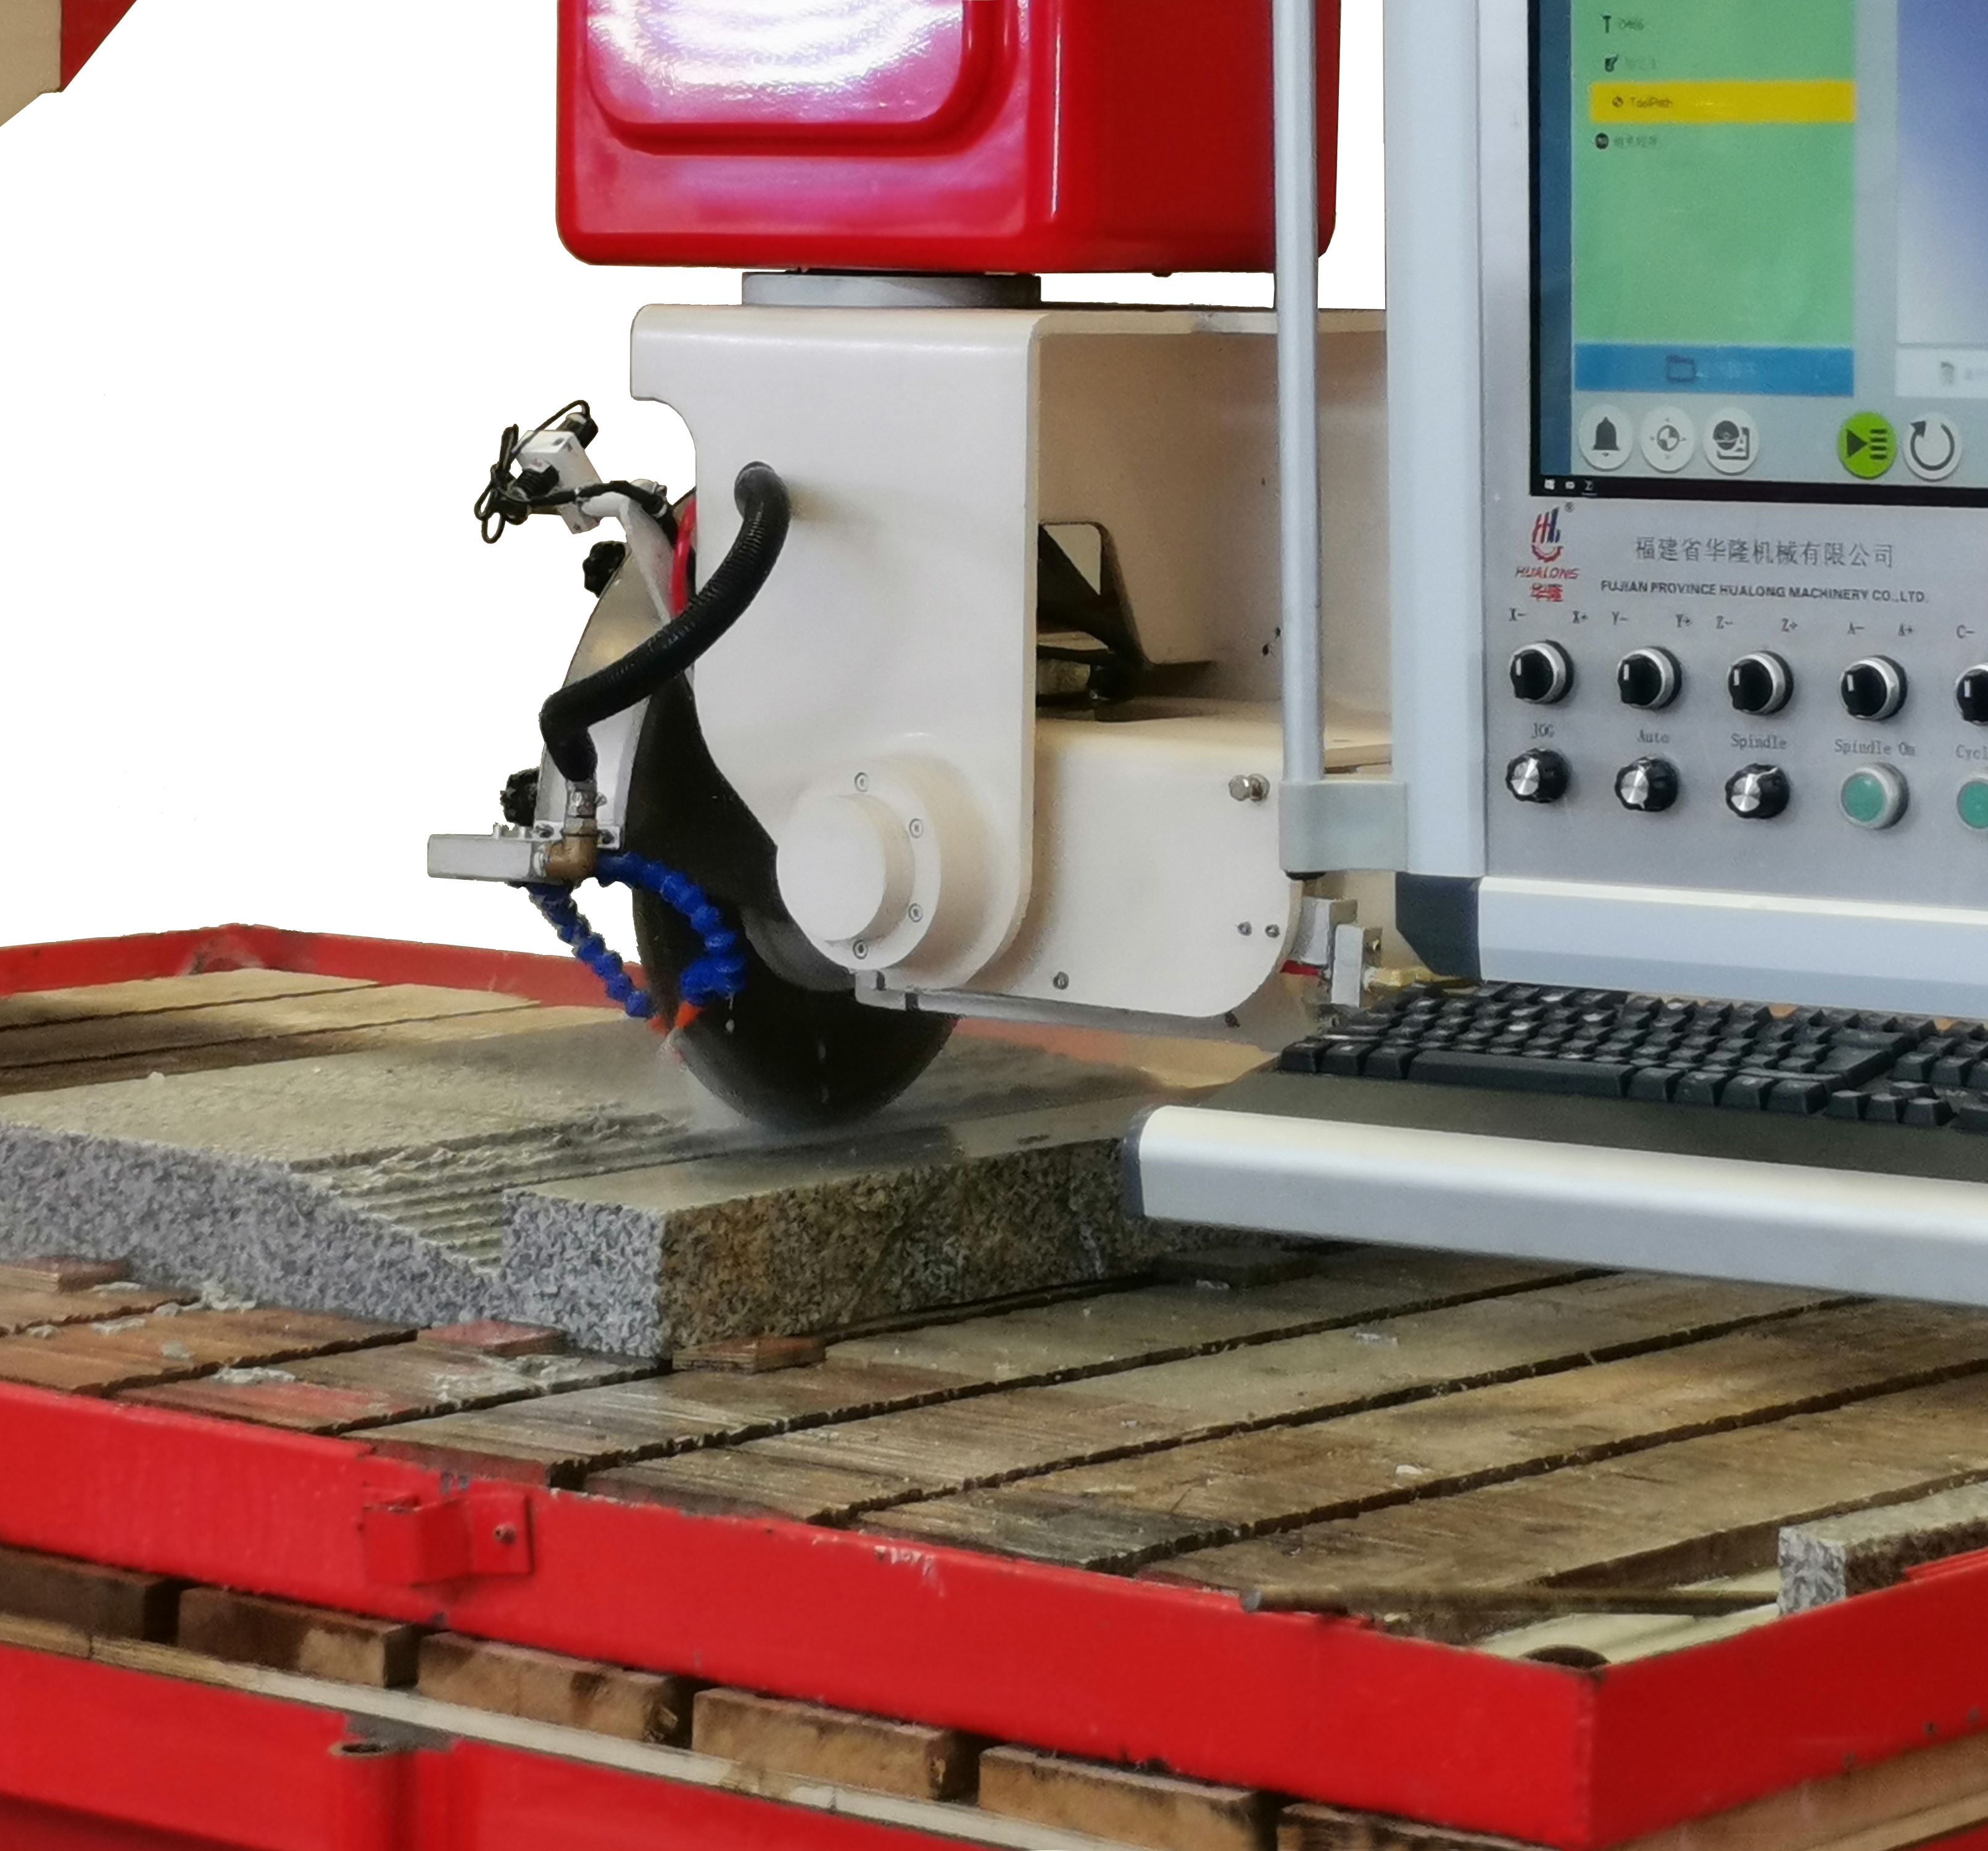 HUALONG taş makineleri HKNC serisi Mermer kesici makinesi 5 eksenli CNC Köprü granit kuvars tezgahı mezar taşı kesmek için Testere